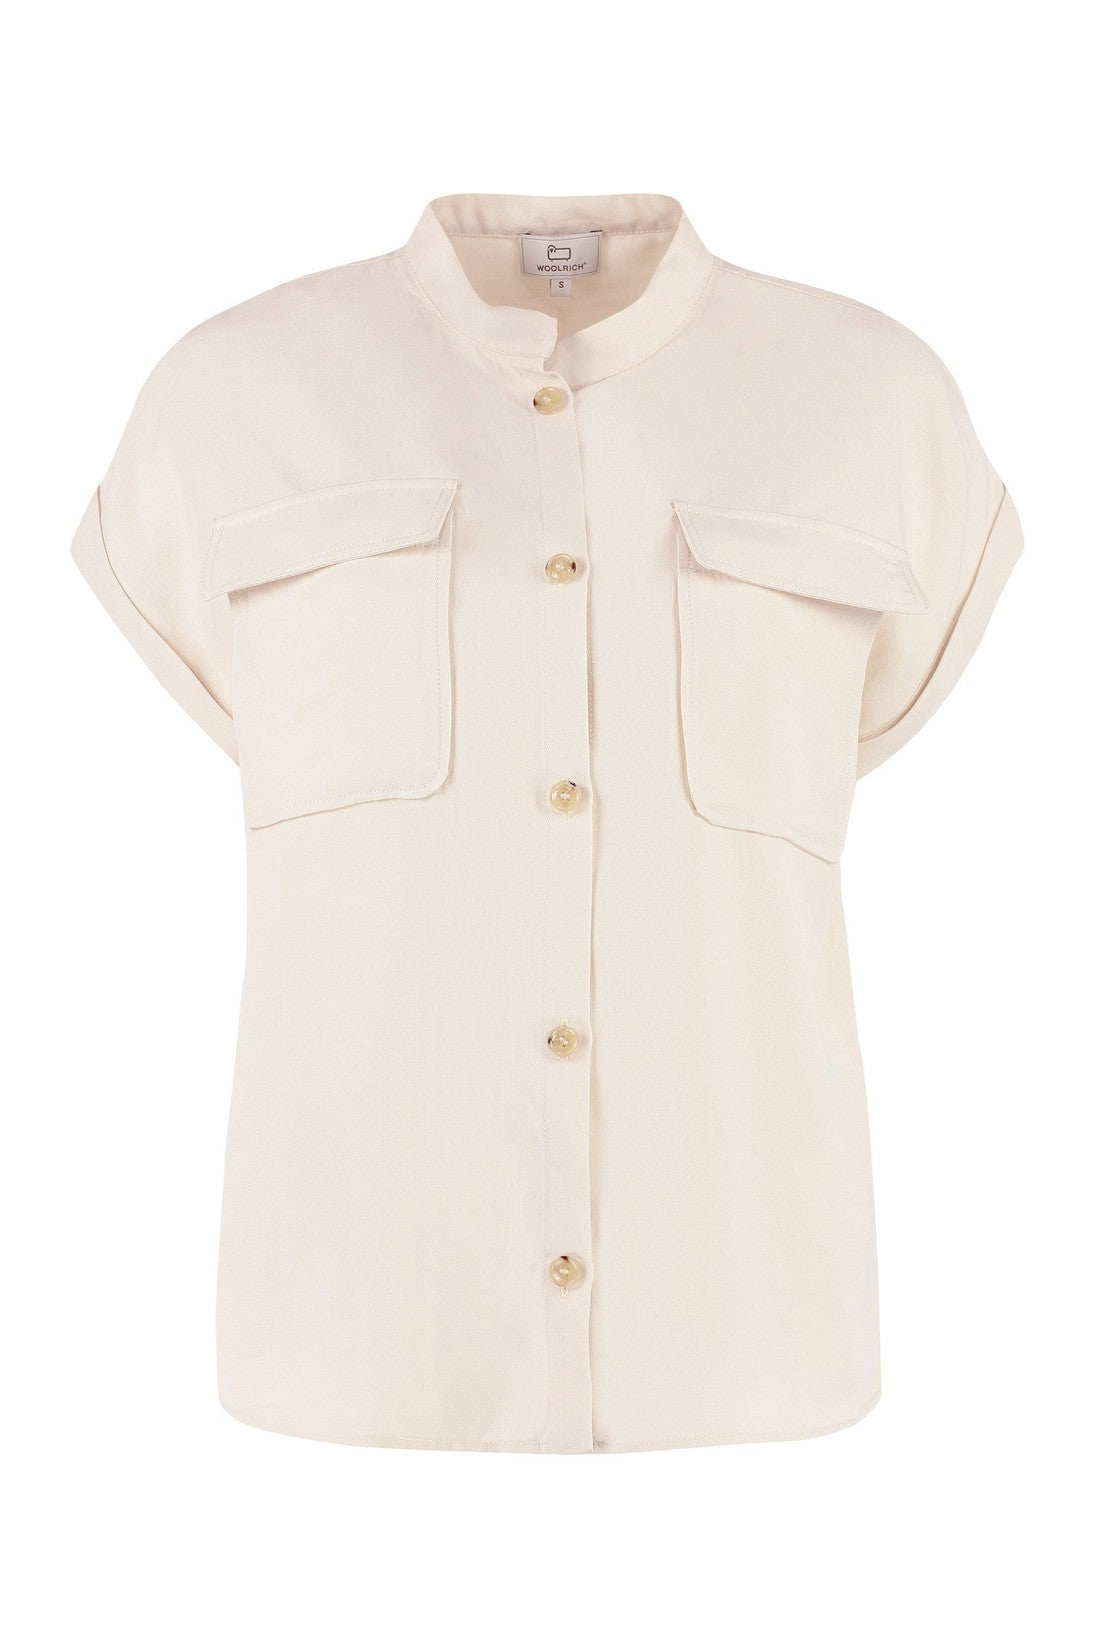 Woolrich-OUTLET-SALE-Short sleeve linen blend shirt-ARCHIVIST